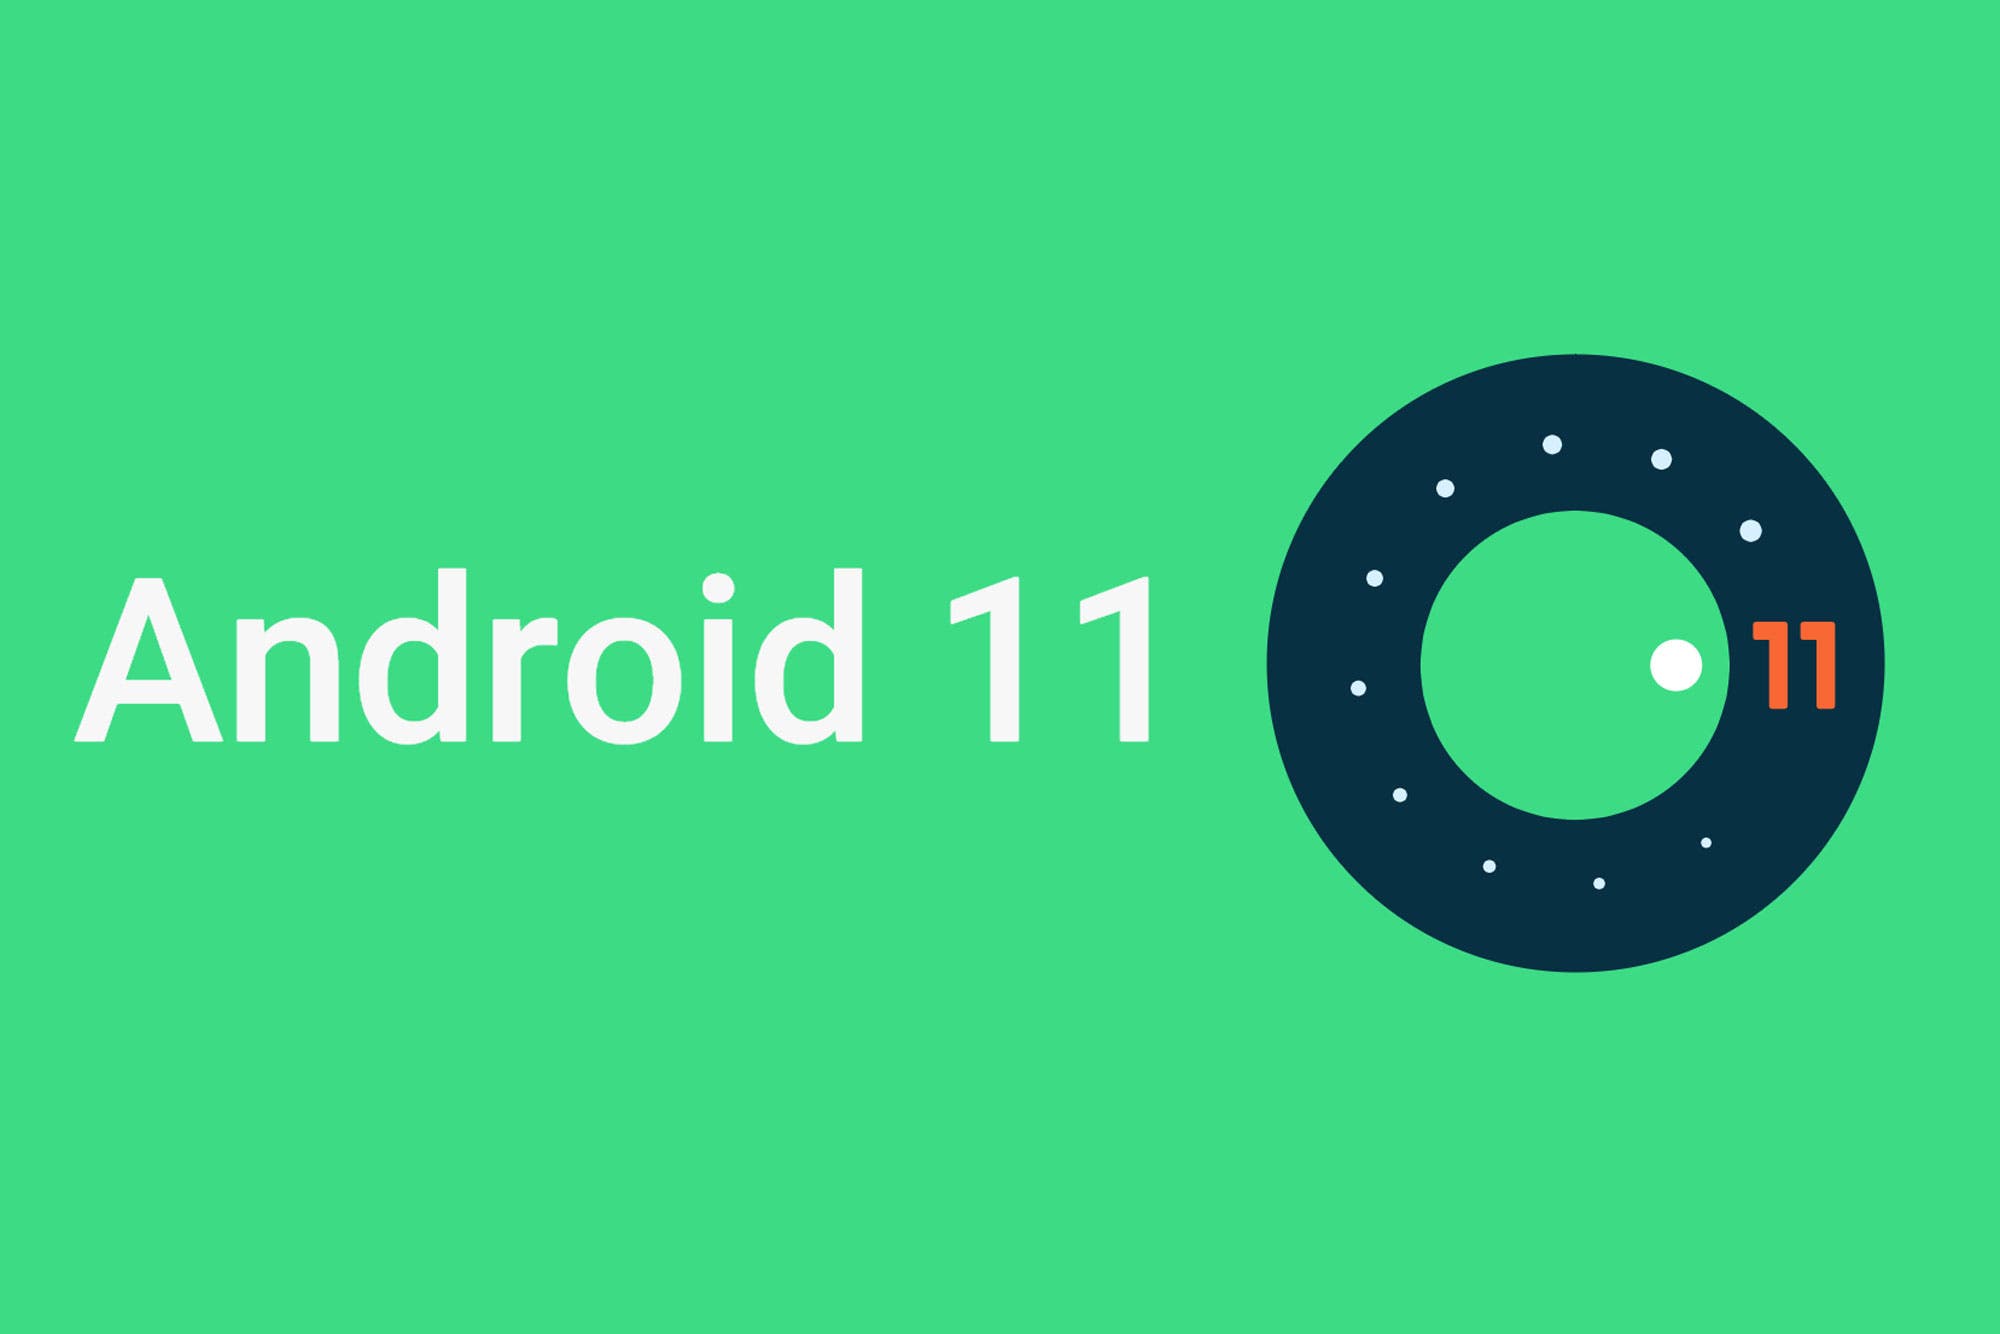 OnePlus incorpora Android 11 Developer Preview a la familia OnePlus 8